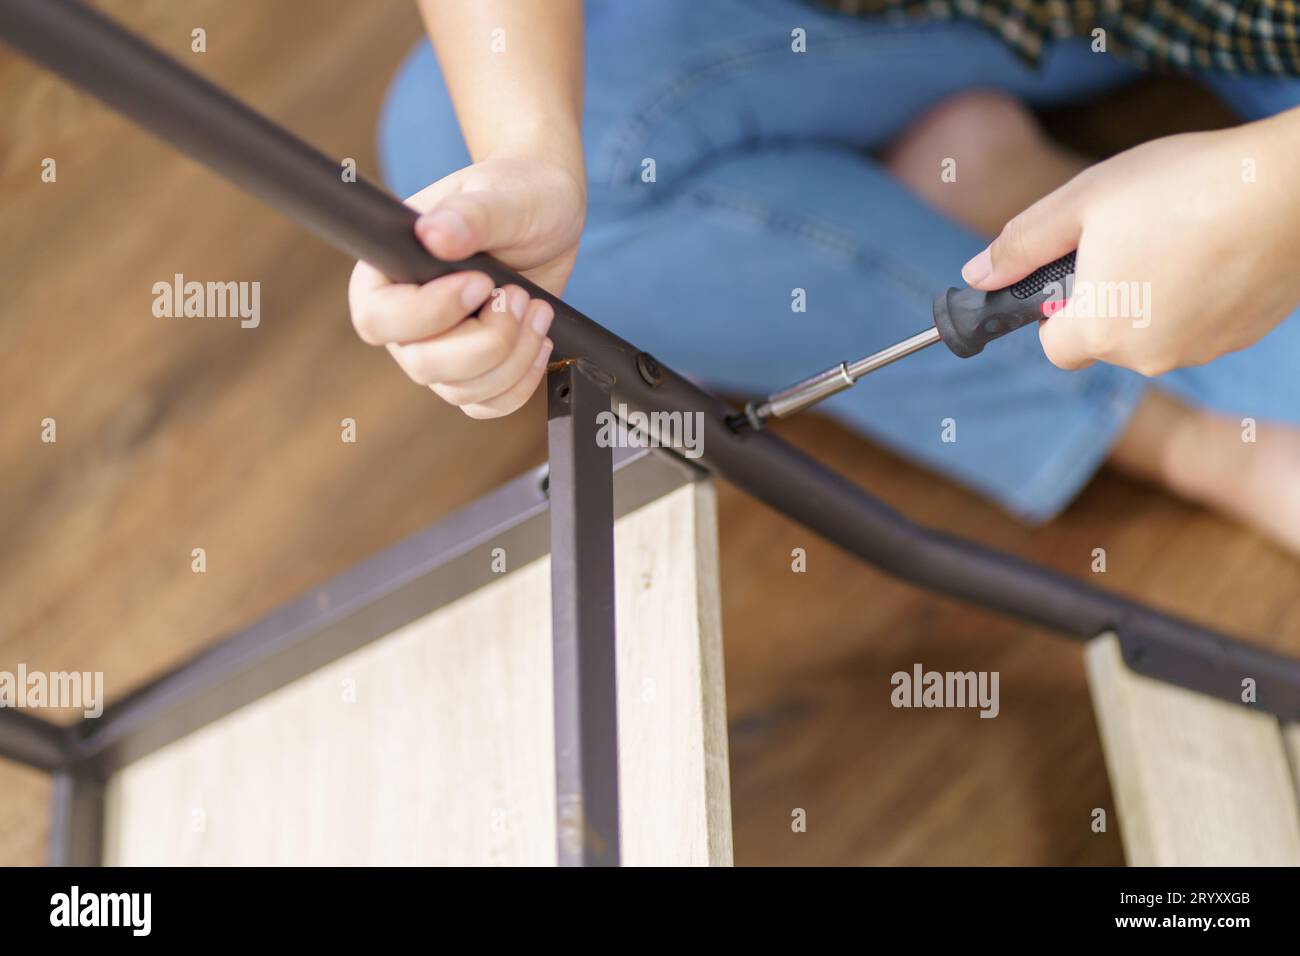 La donna asiatica ripara autonomamente i mobili rinnovati utilizzando attrezzature per riparare i mobili da casa, seduti sul pavimento. Foto Stock